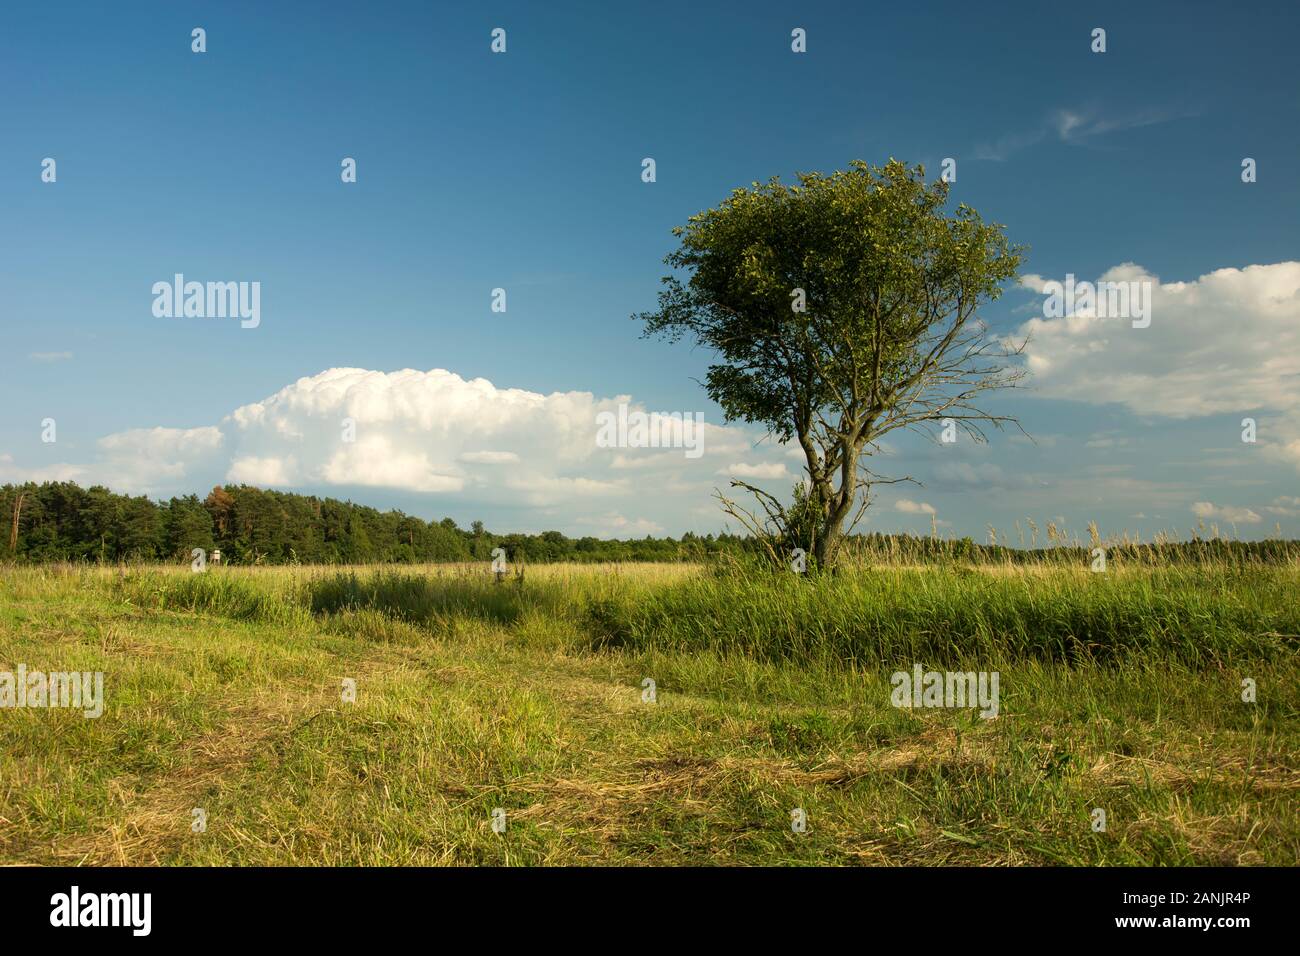 Lonely sommergrüne Baum auf der Wiese, weiße Wolken und blauer Himmel Stockfoto